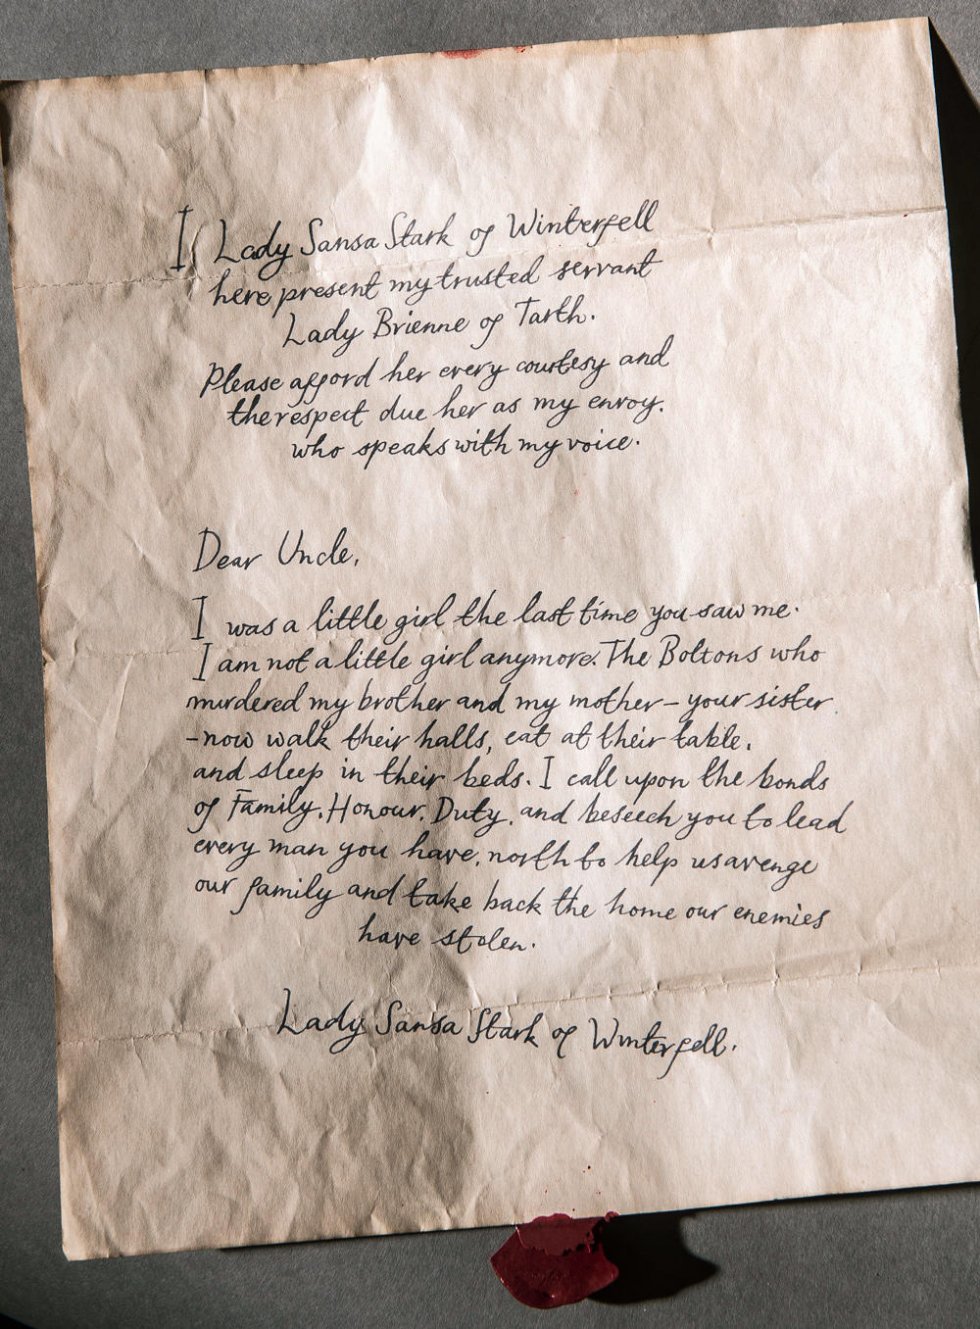 Her er brevet Sansa Stark sendte til The Blackfish